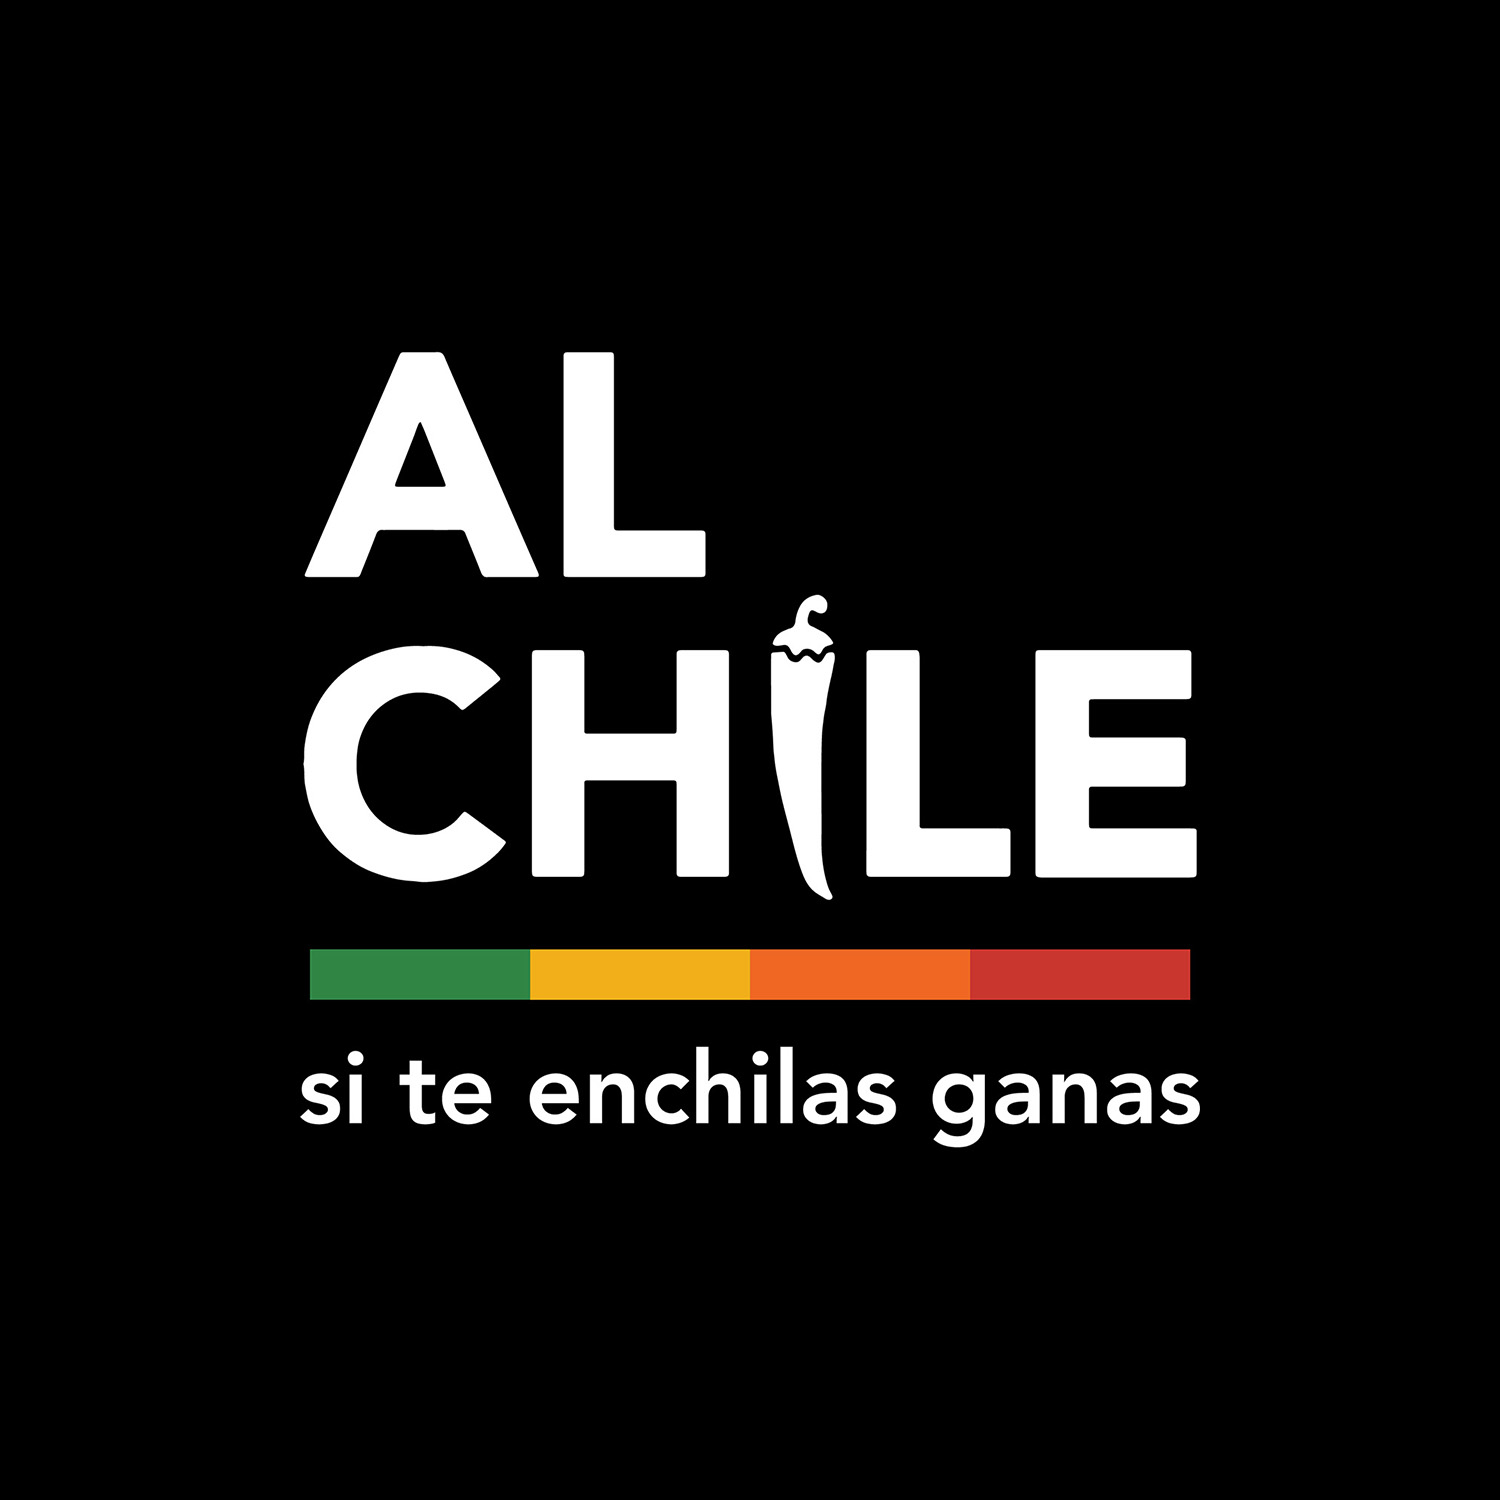 Al Chile